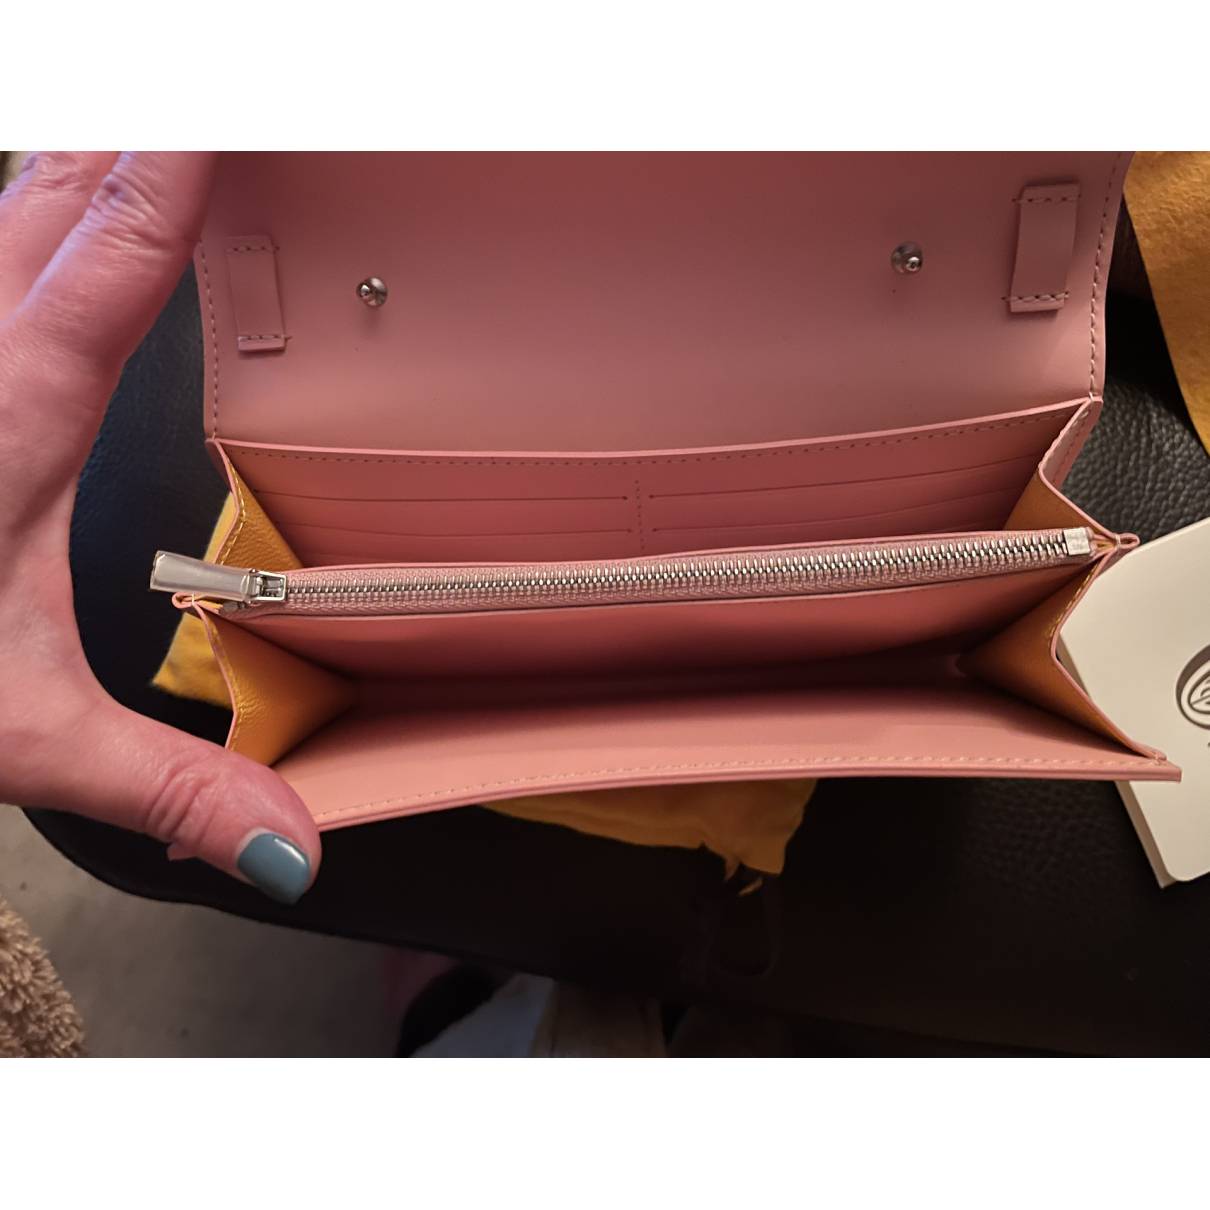 Cloth crossbody bag Goyard Pink in Cloth - 30832825